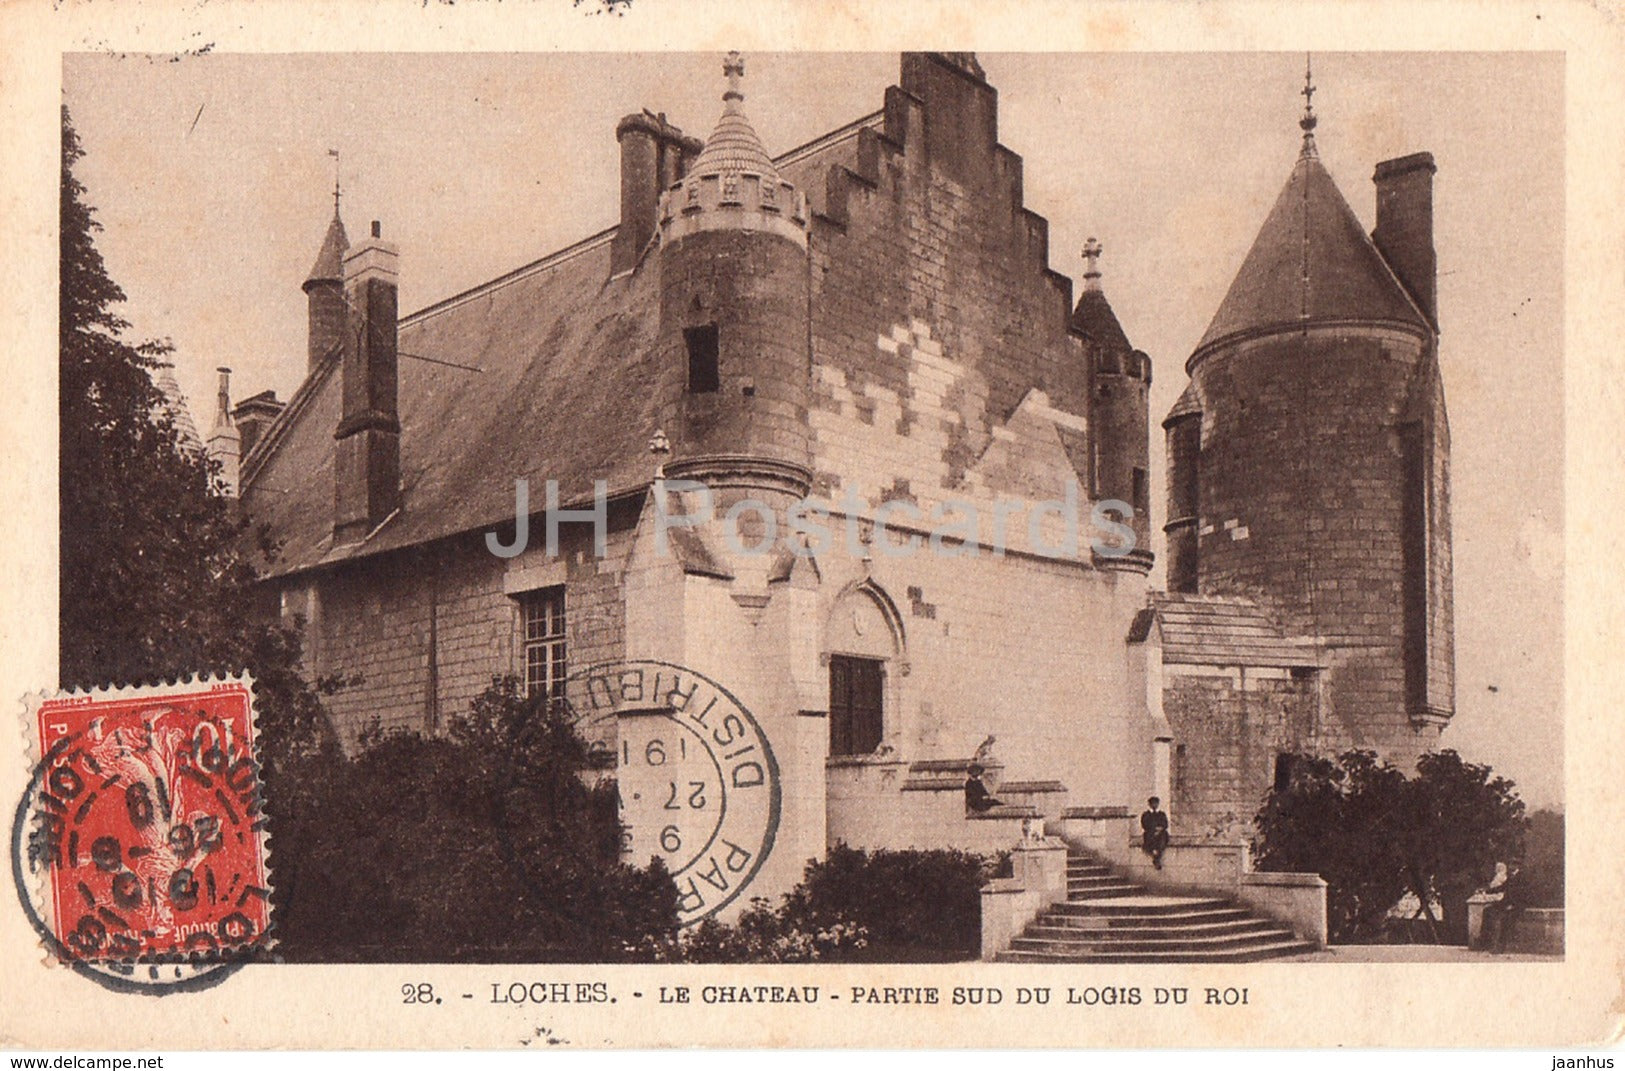 Loches - Le Chateau - Partie Sud du Logis du Roi - 28 - castle - old postcard - 1919 - France - used